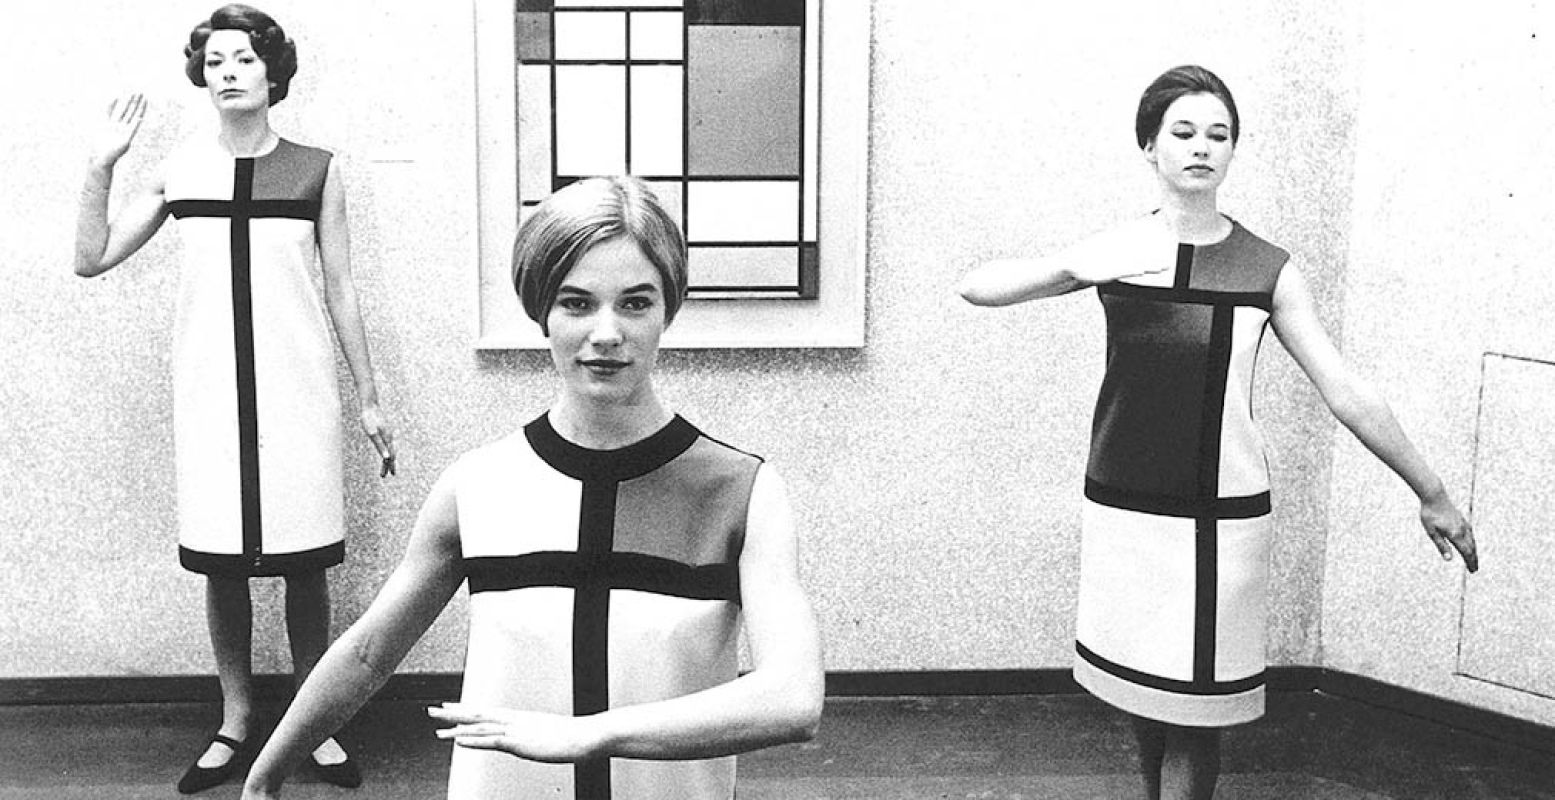 Foto: Gemeentemuseum Den Haag © Drie medewerkers van het Nederlands Kostuummuseum in jurken van Yves Saint Laurent, herfstwintercollectie 1965, in het Gemeentemuseum Den Haag, 1966.